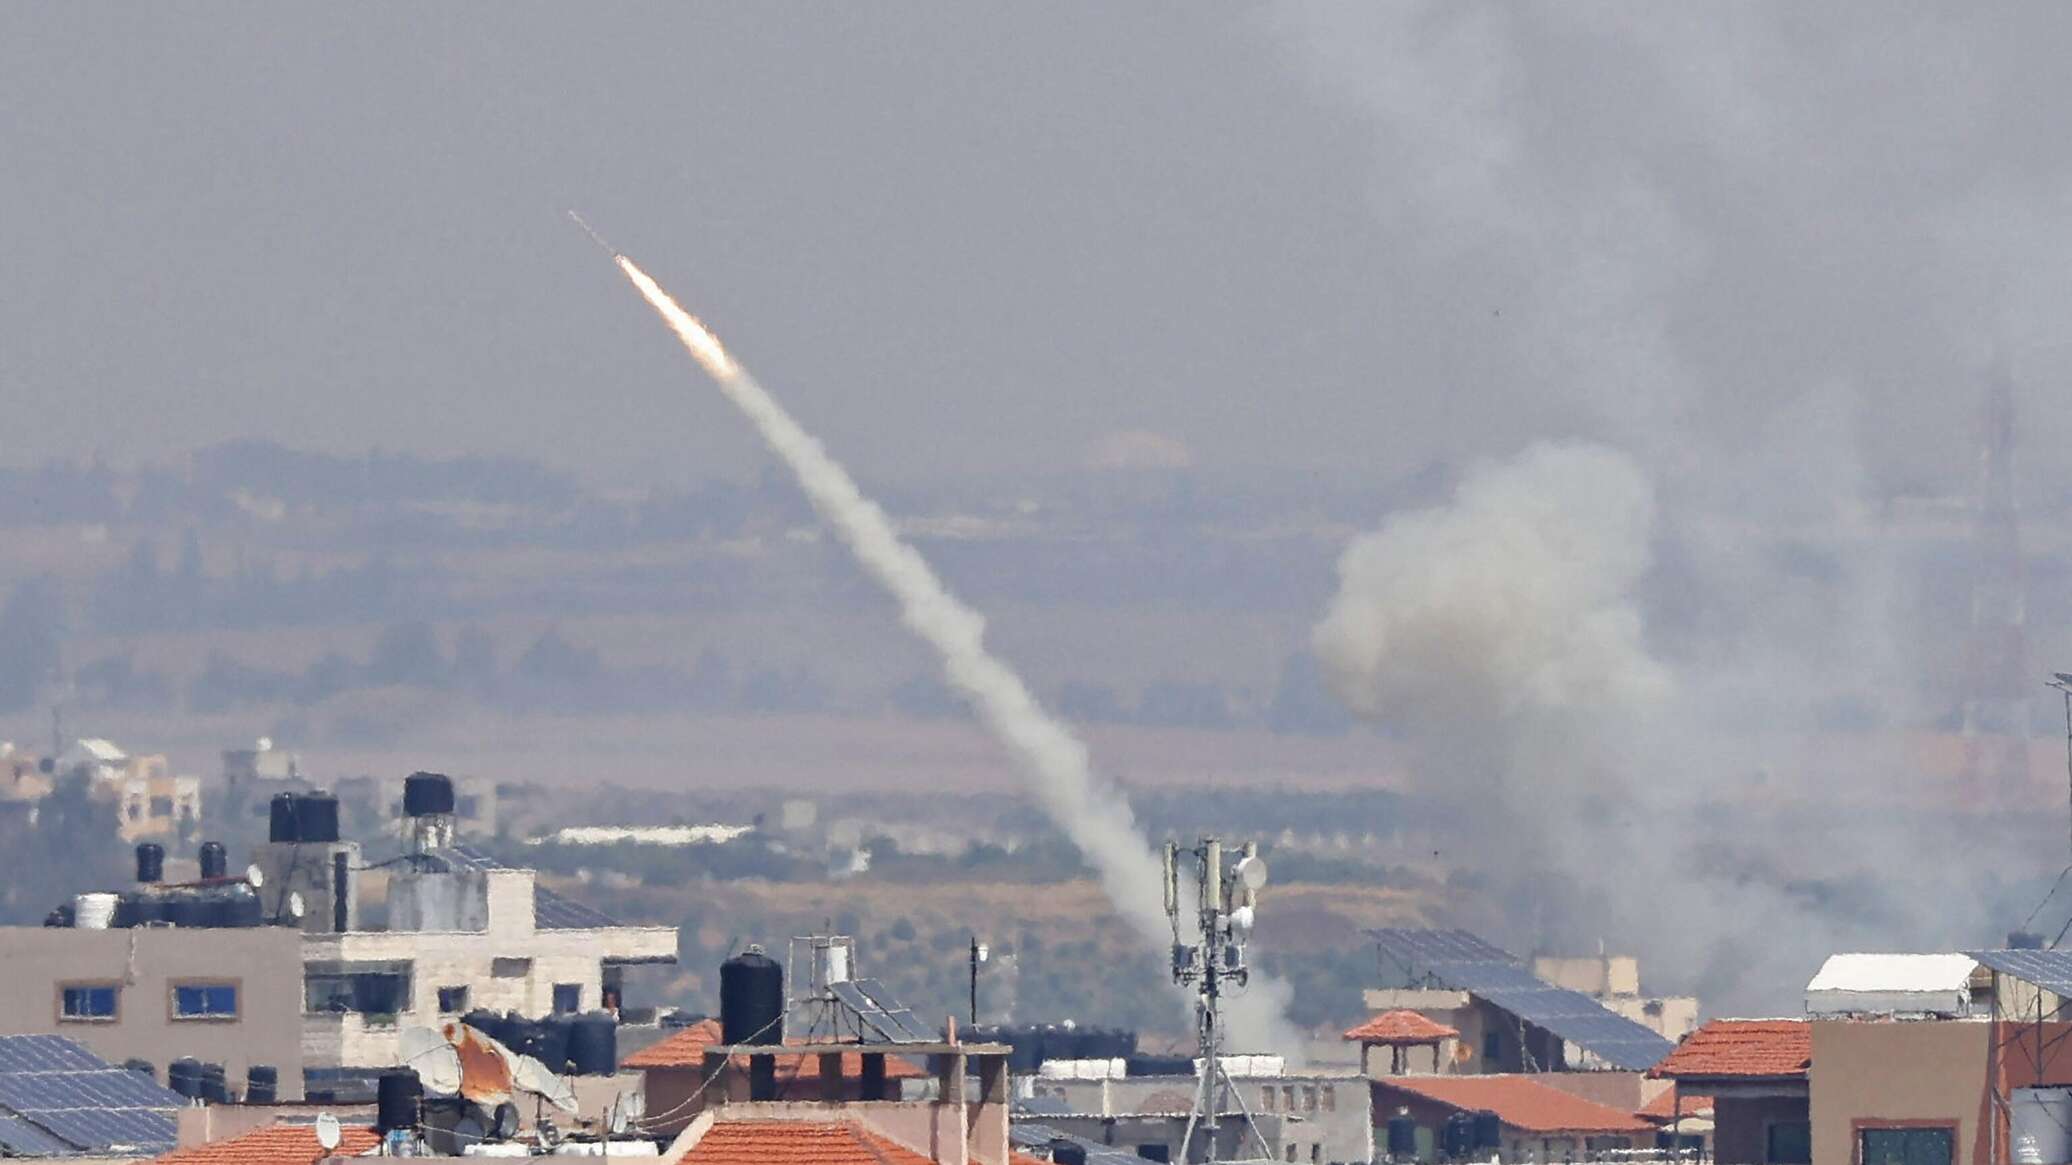 فيديوهات توثق إطلاق صواريخ من غزة باتجاه القدس وترصد هروب المستوطنين